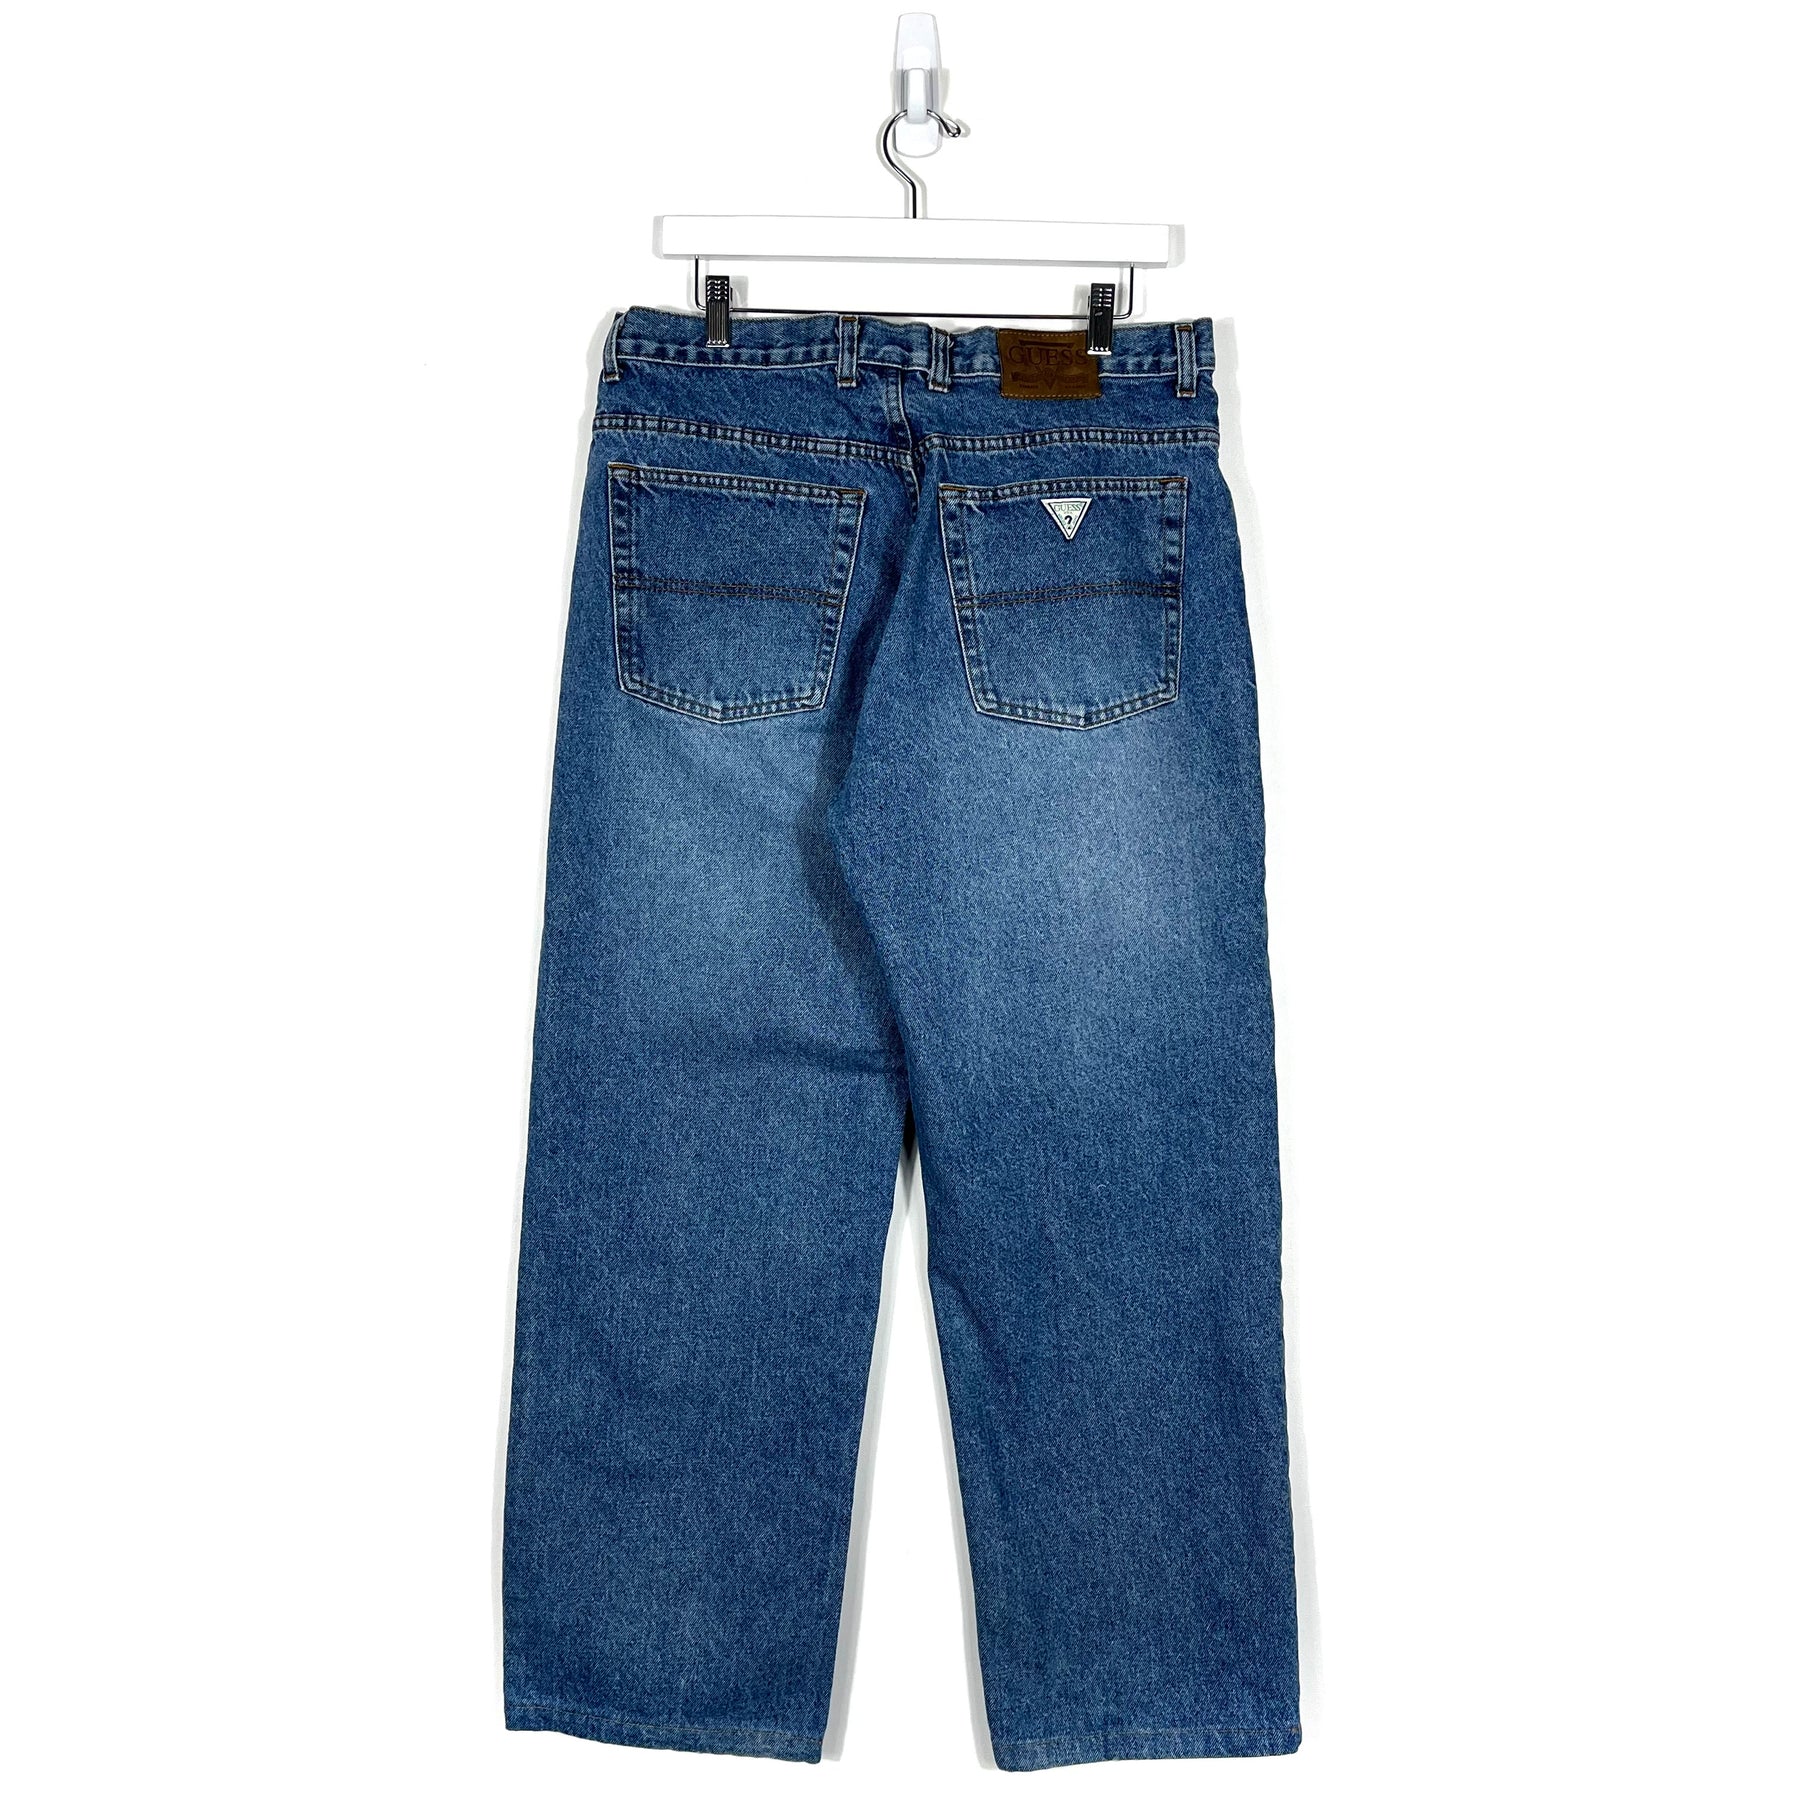 Vintage Guess Jeans - Men's 32/30